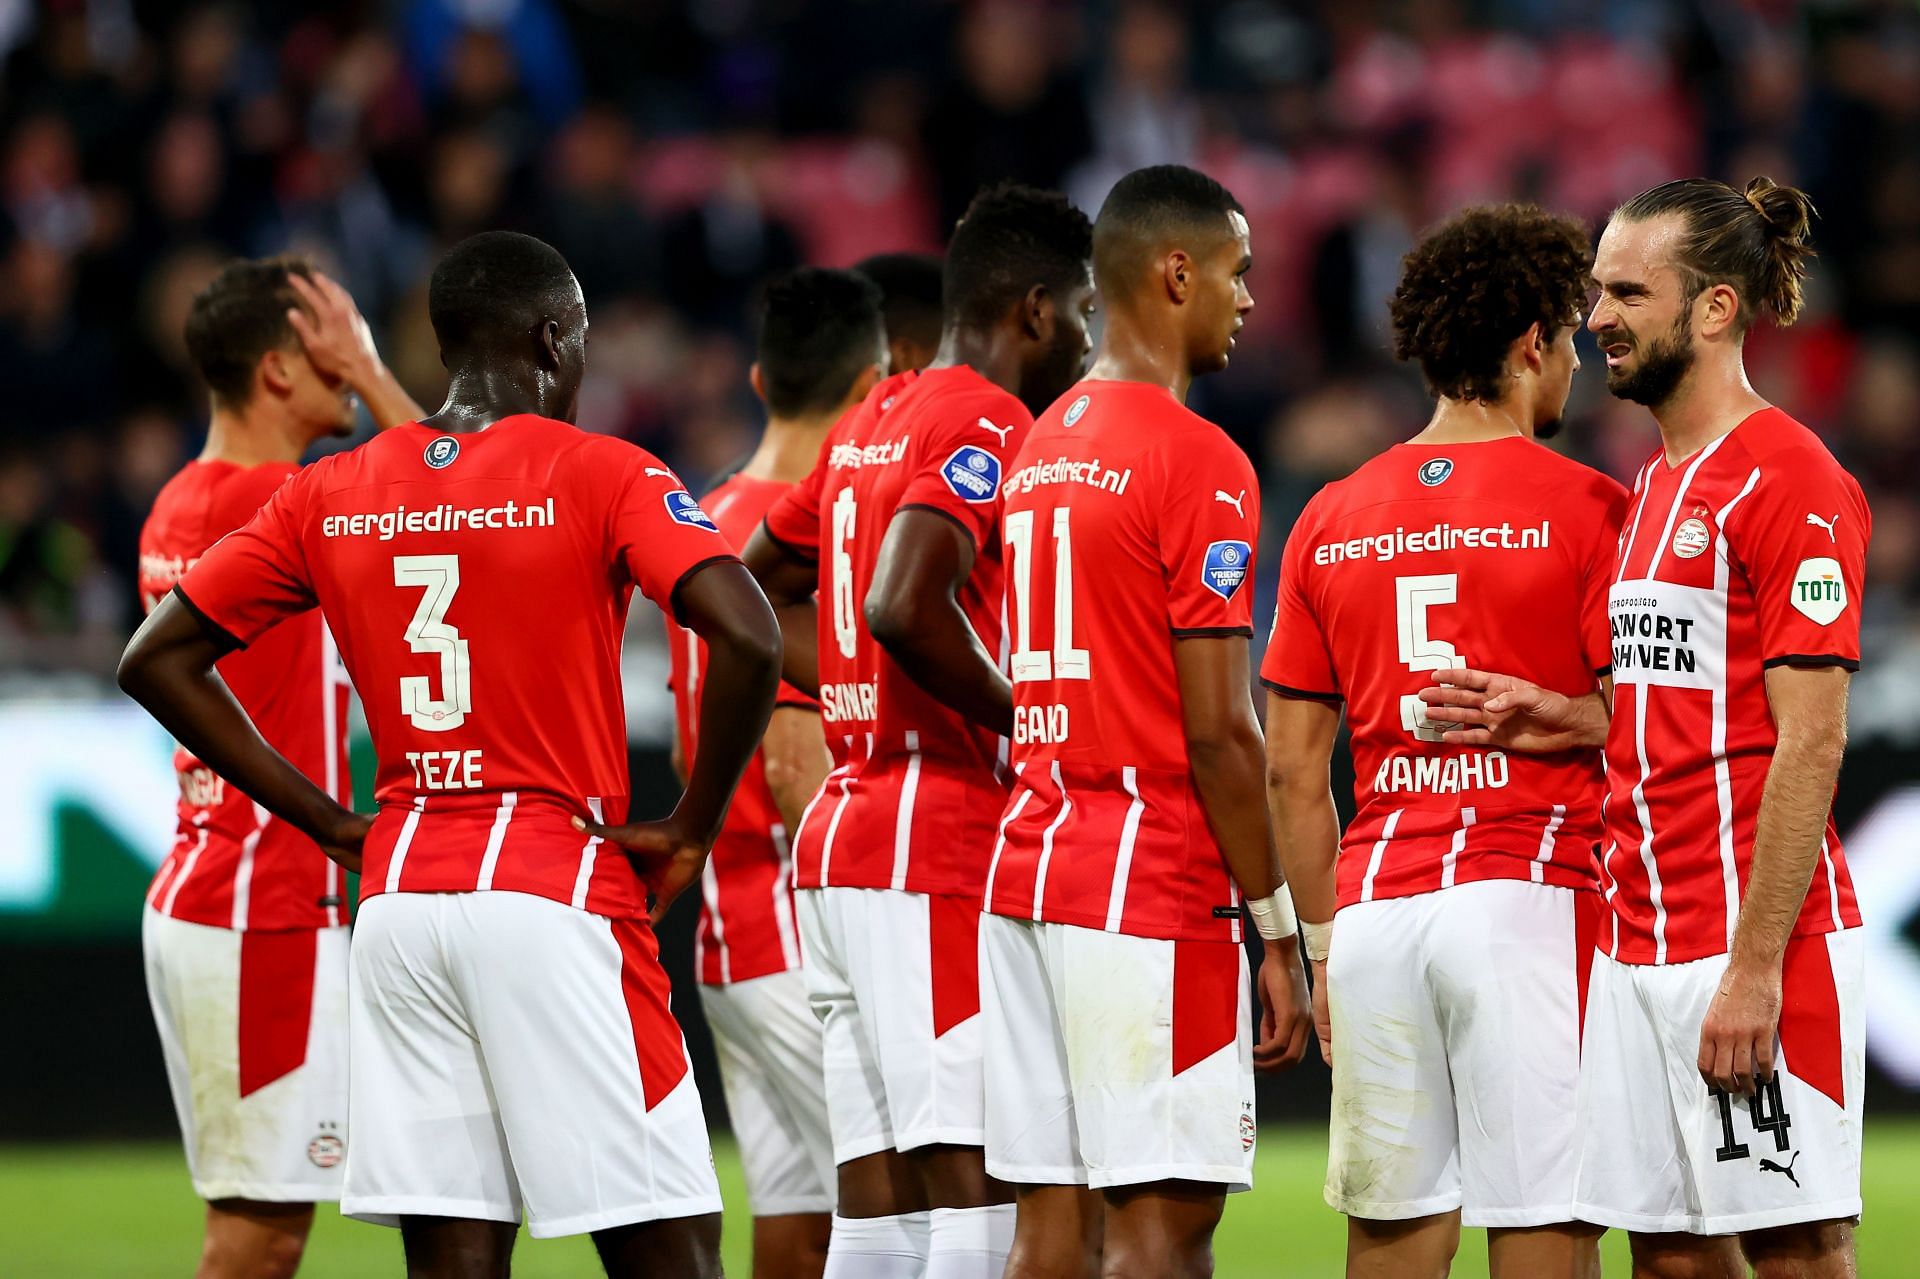 PSV Eindhoven play AS Monaco on Thursday